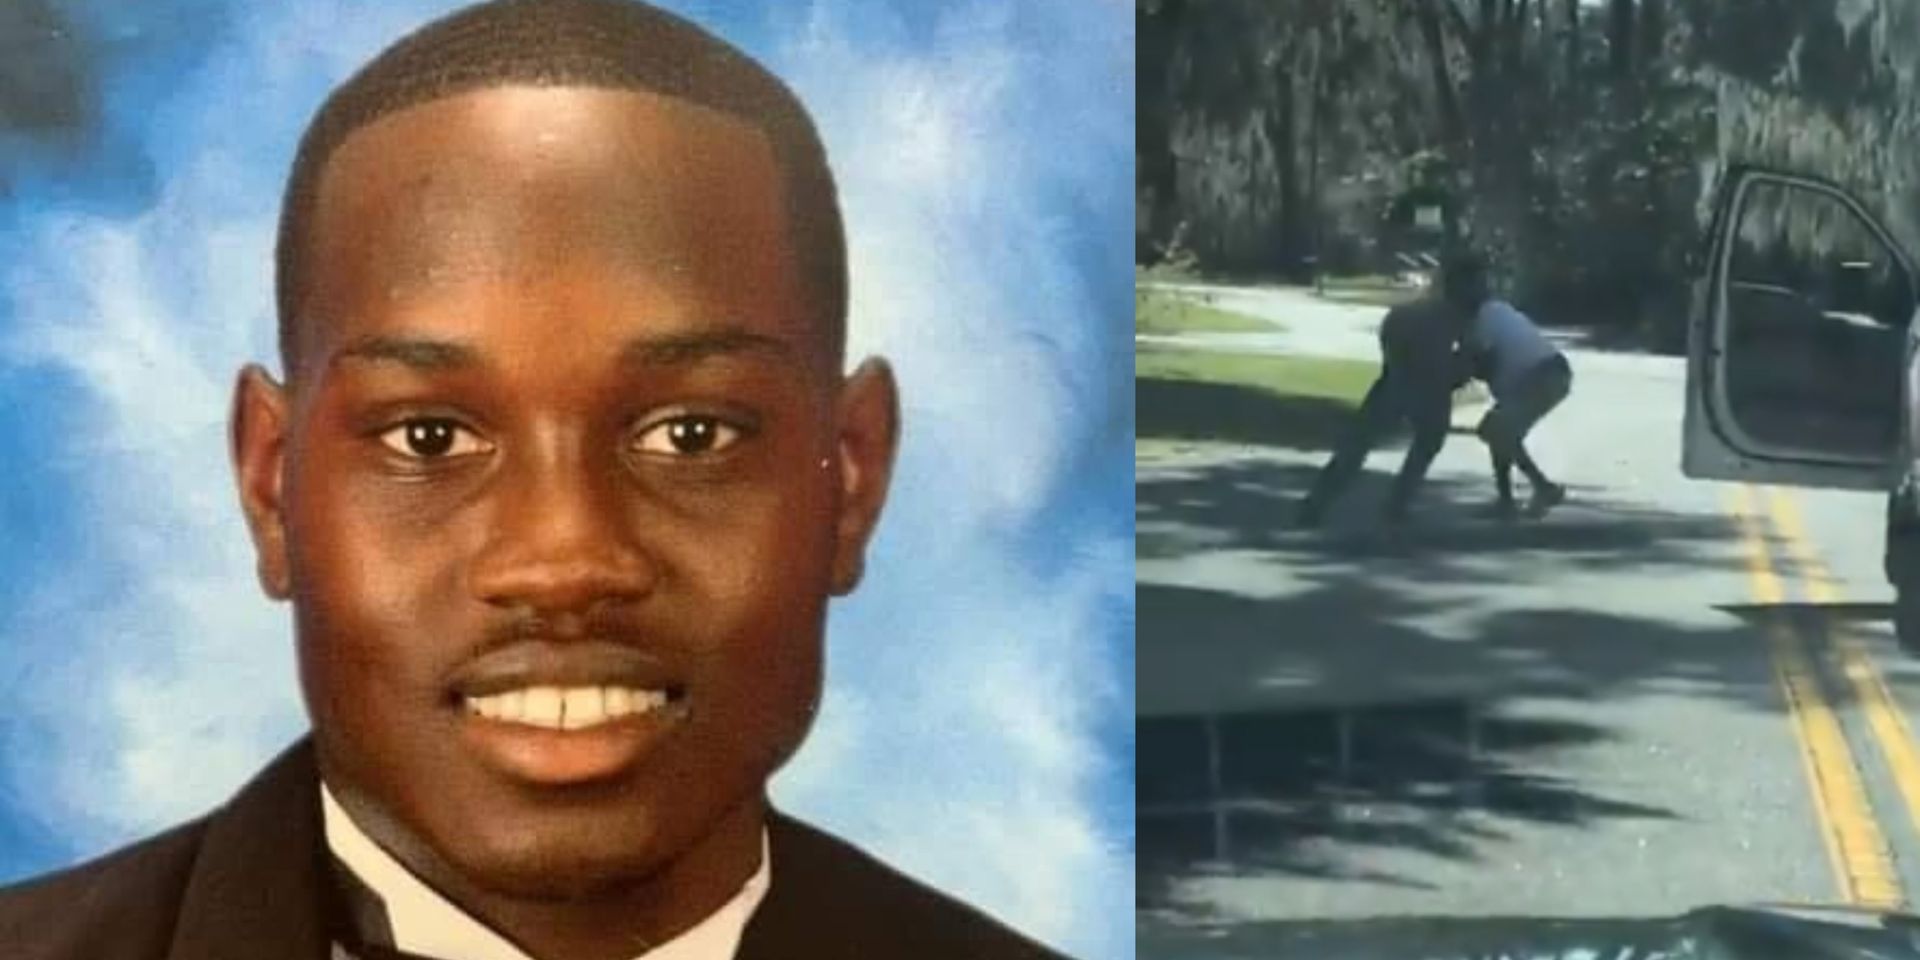 Meurtre d'un joggeur noir: deux hommes blancs arrêtés